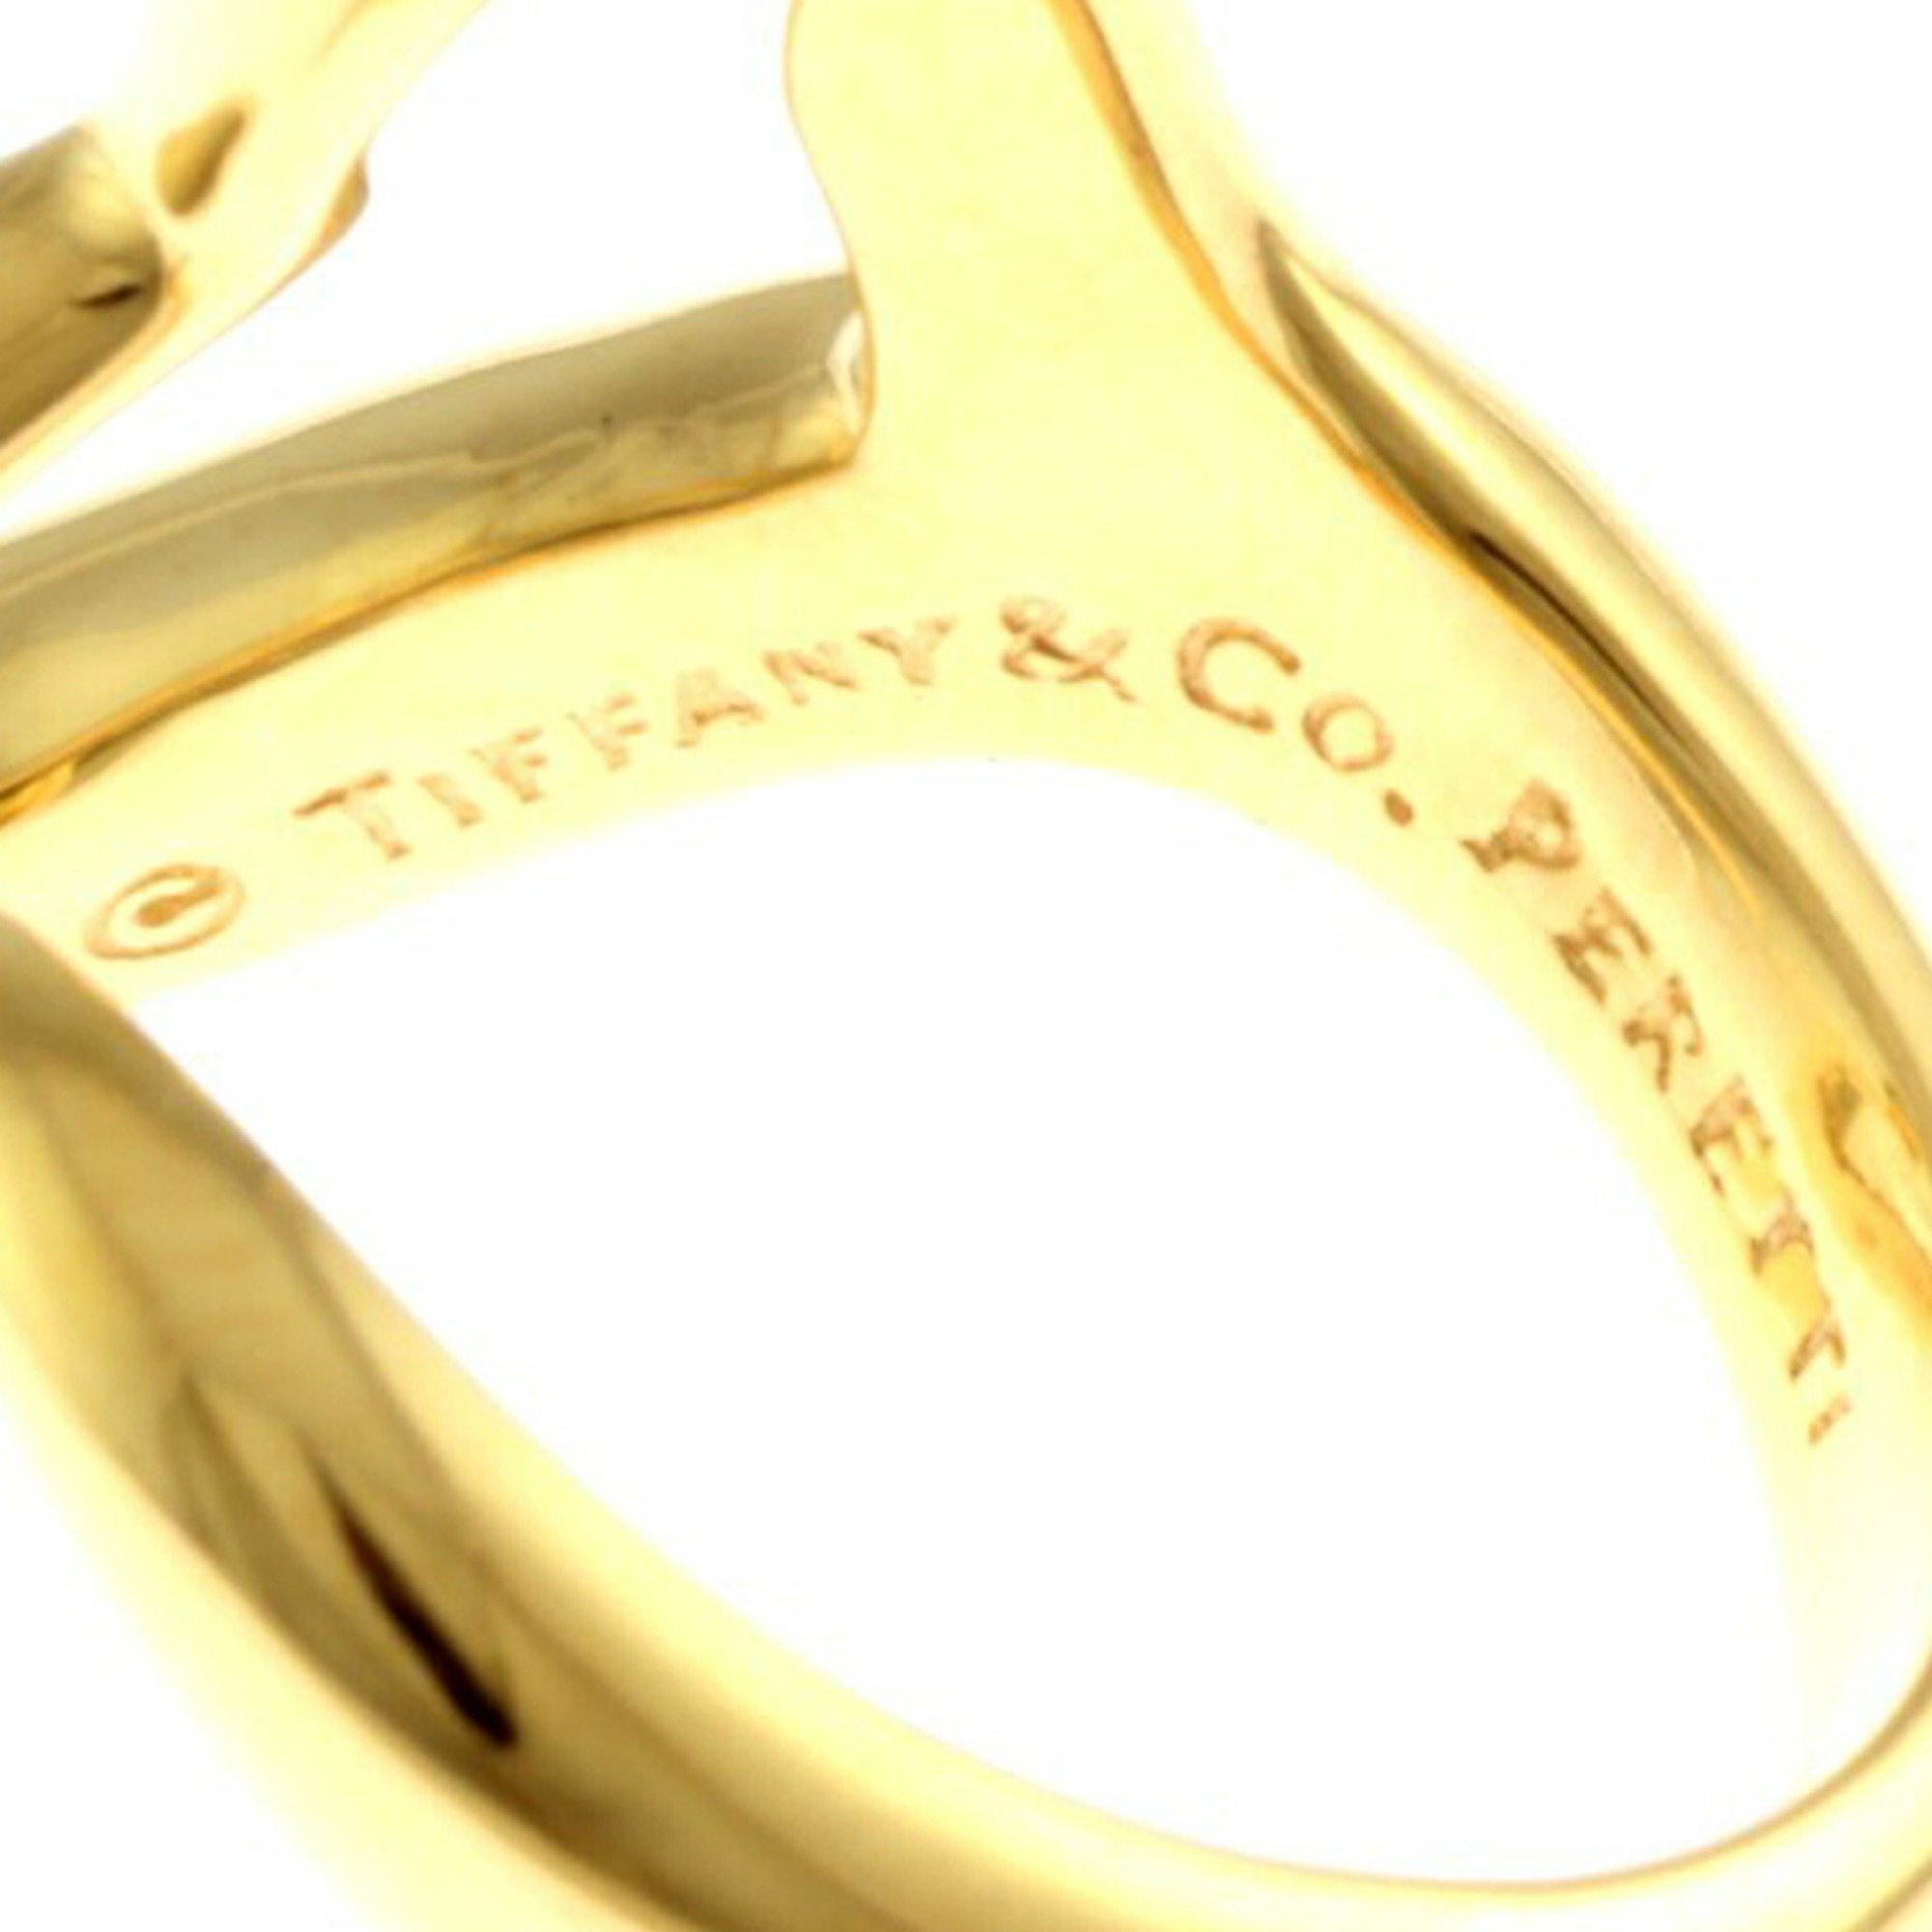 Tiffany Heart Ring, Tiffany, size 9, 18k gold, women's, TIFFANY&Co.